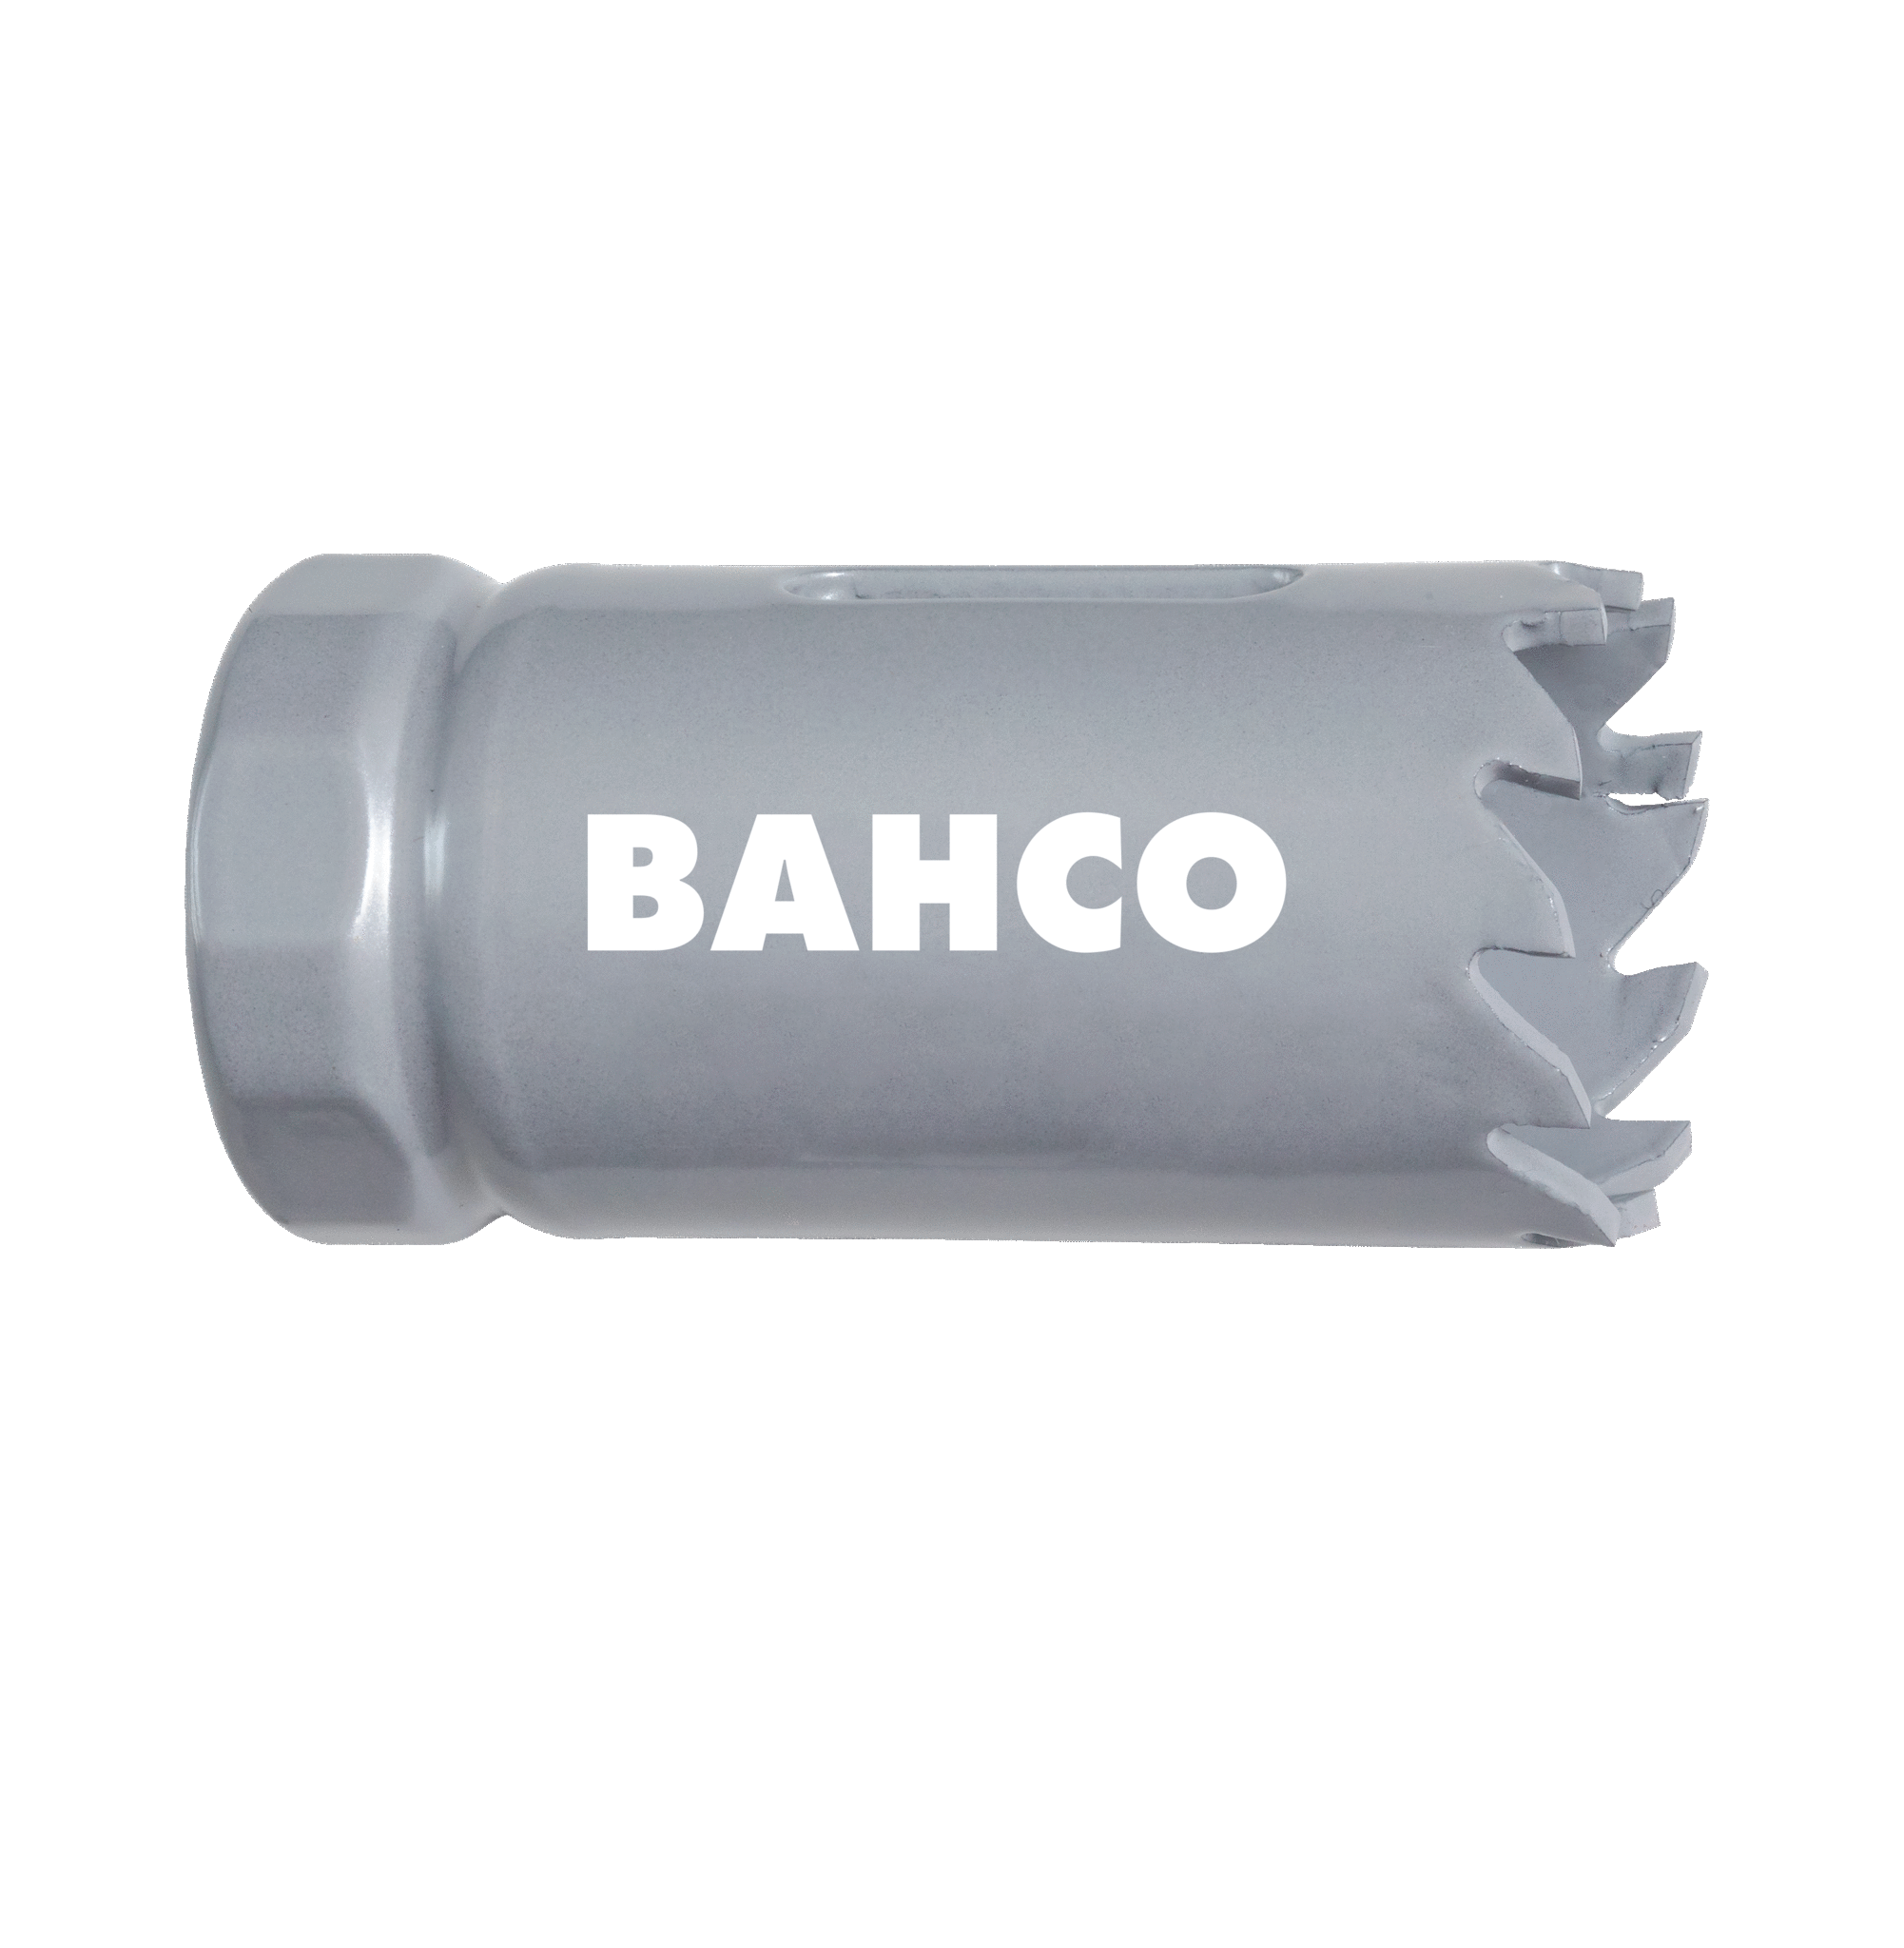 Кольцевые пилы с твердосплавными напайками BAHCO 3832-59